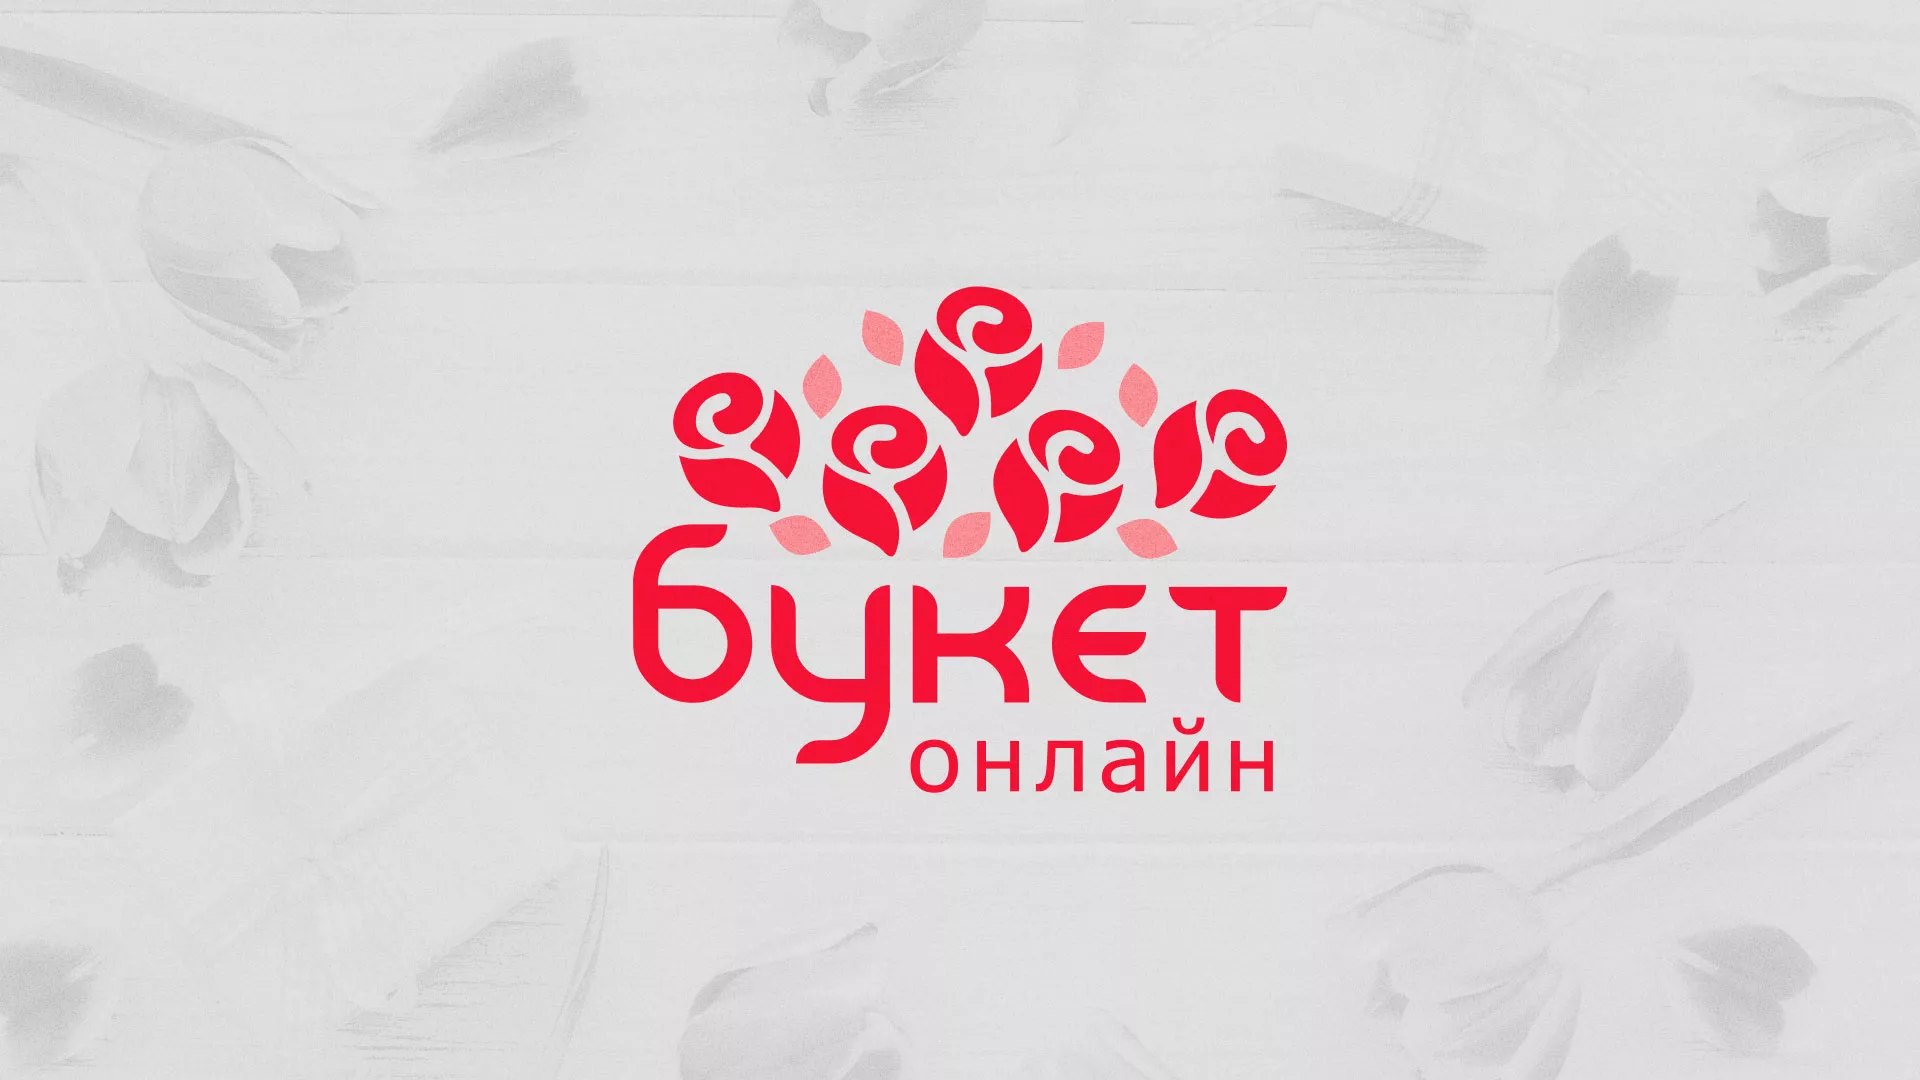 Создание интернет-магазина «Букет-онлайн» по цветам в Сердобске